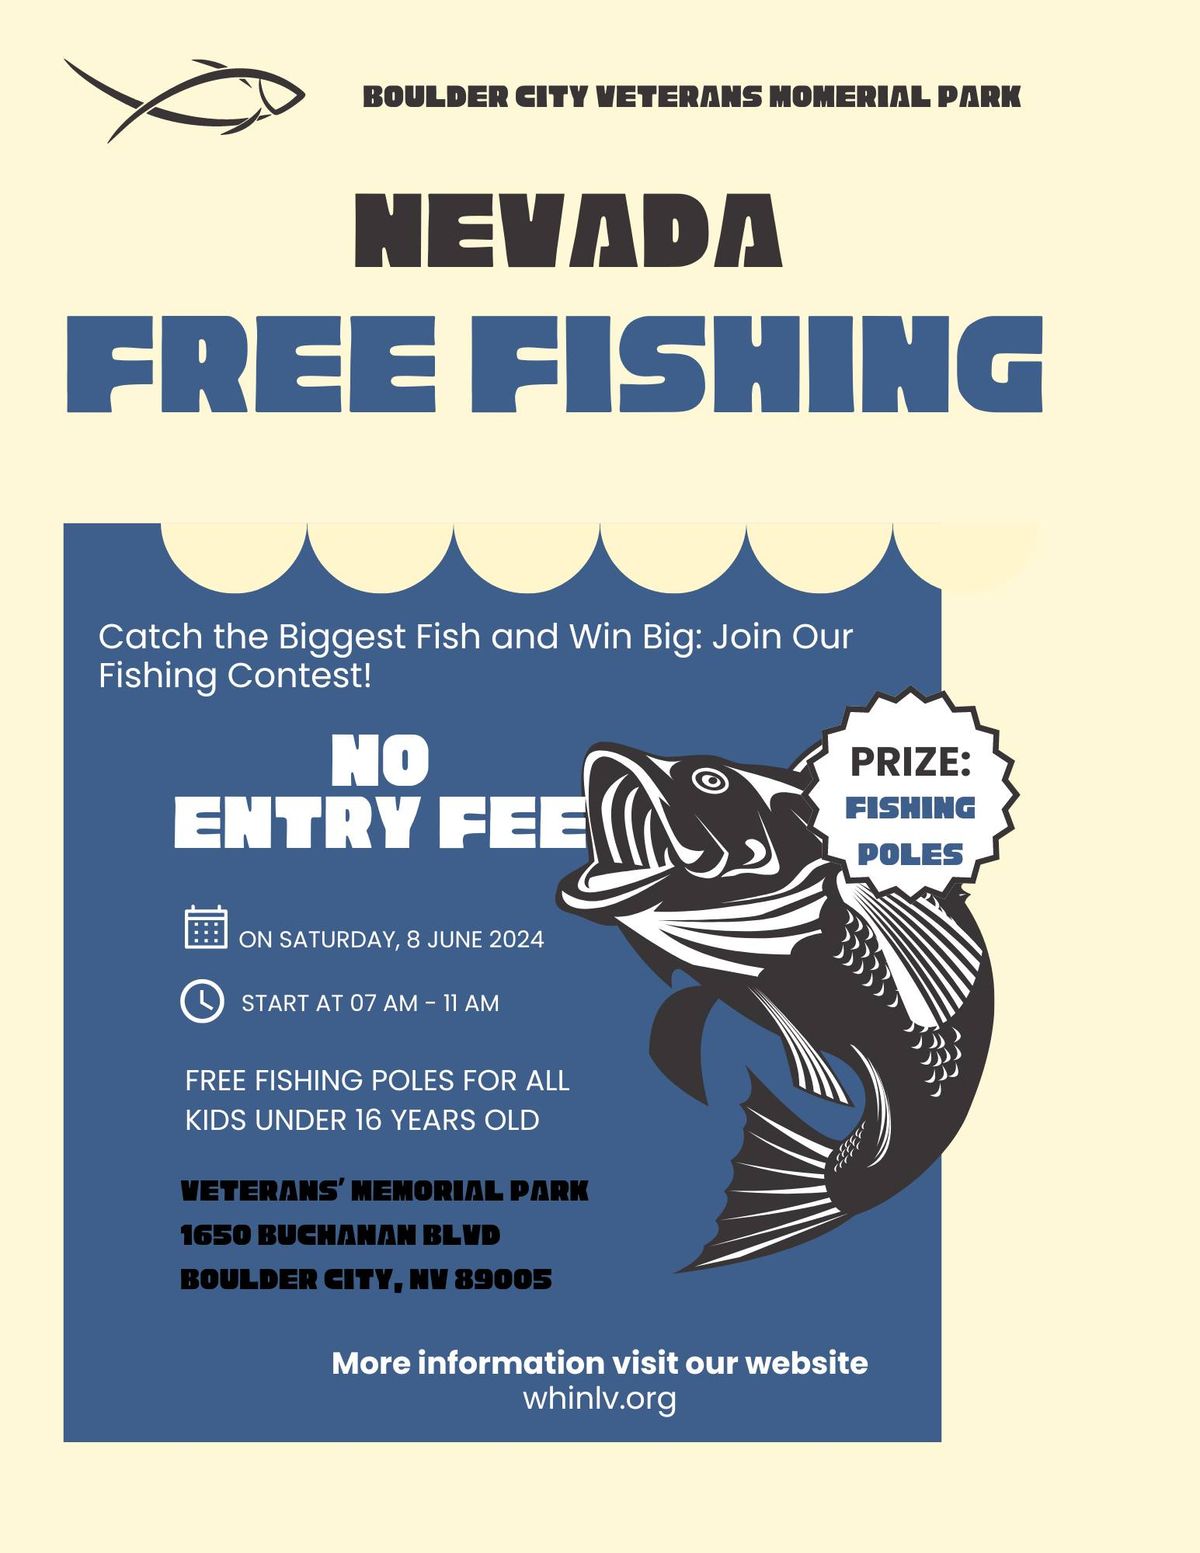 NV FREE FISHING DAY